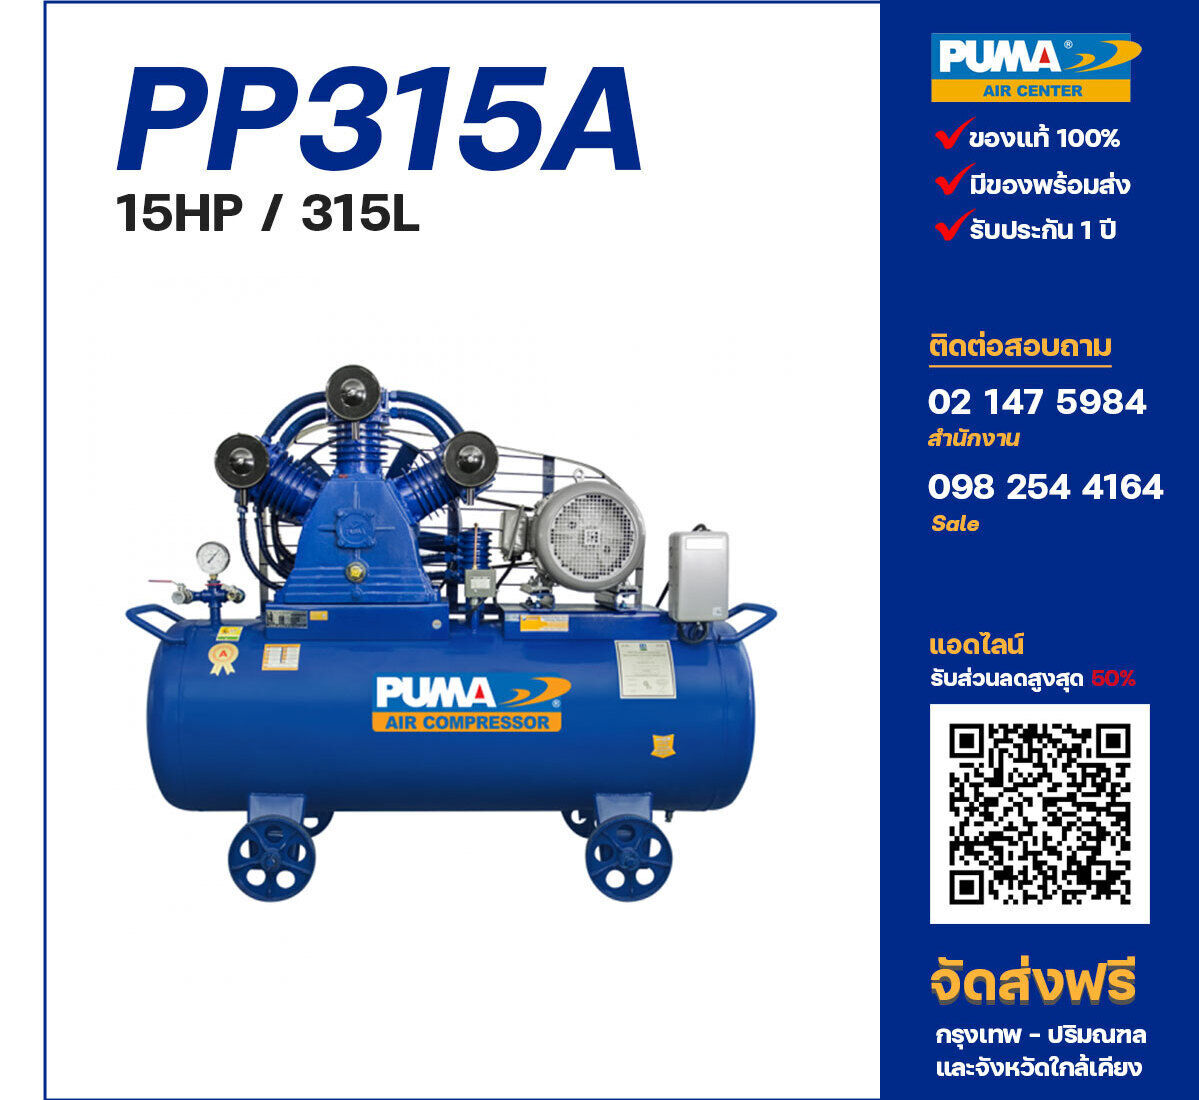 ปั๊มลมพูม่า PUMA PP315A-PPM380V ปั๊มลมลูกสูบ ขนาด 3 สูบ 15 แรงม้า 315 ลิตร PUMA พร้อมมอเตอร์ PUMA ไฟ 380V ส่งฟรี กรุงเทพฯ-ปริมณฑล รับประกัน 1 ปี